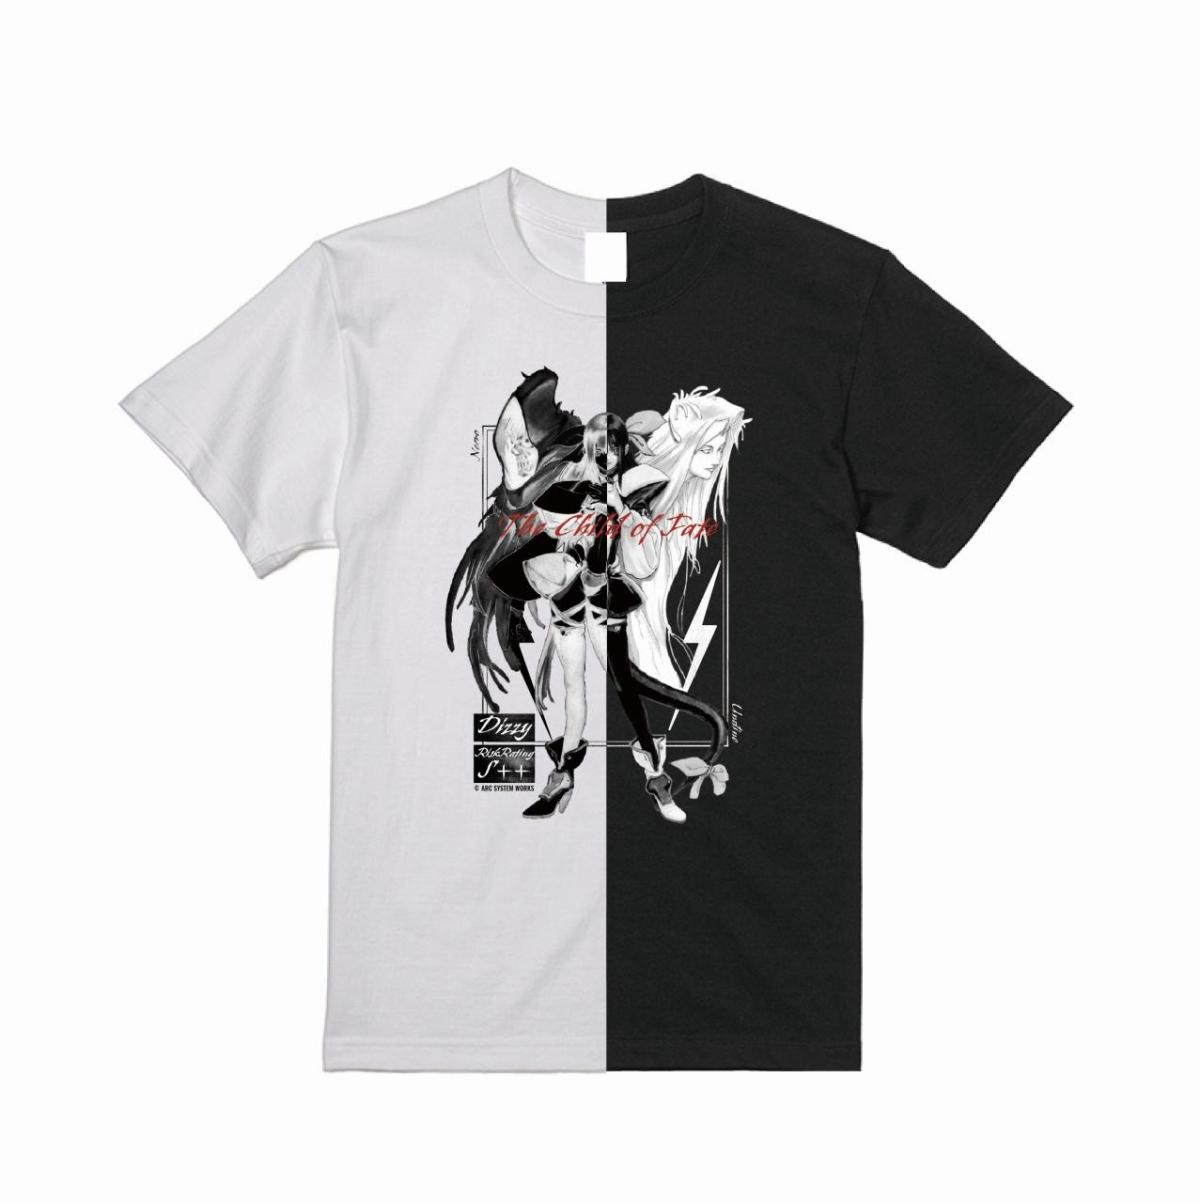 Guilty Gear Series 2-in-1 T-Shirt "Dizzy Type: W/B" Free Size